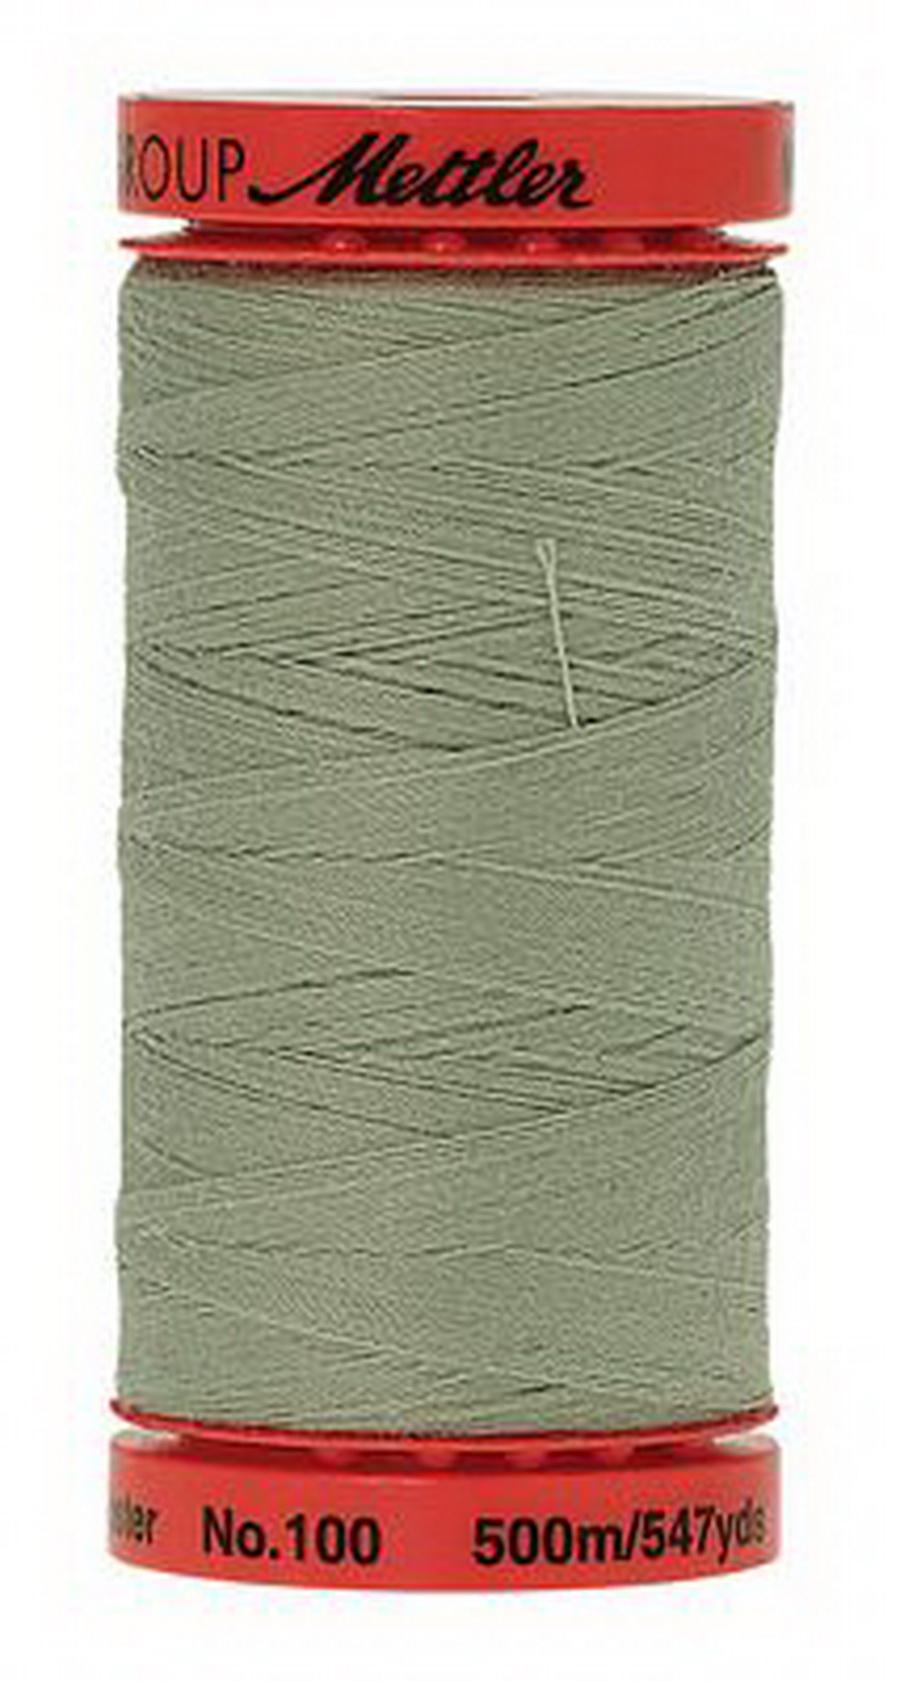 Mettler Metrosene Plus Polyester Thread 547 yds-Spanish Moss (9145-1095)